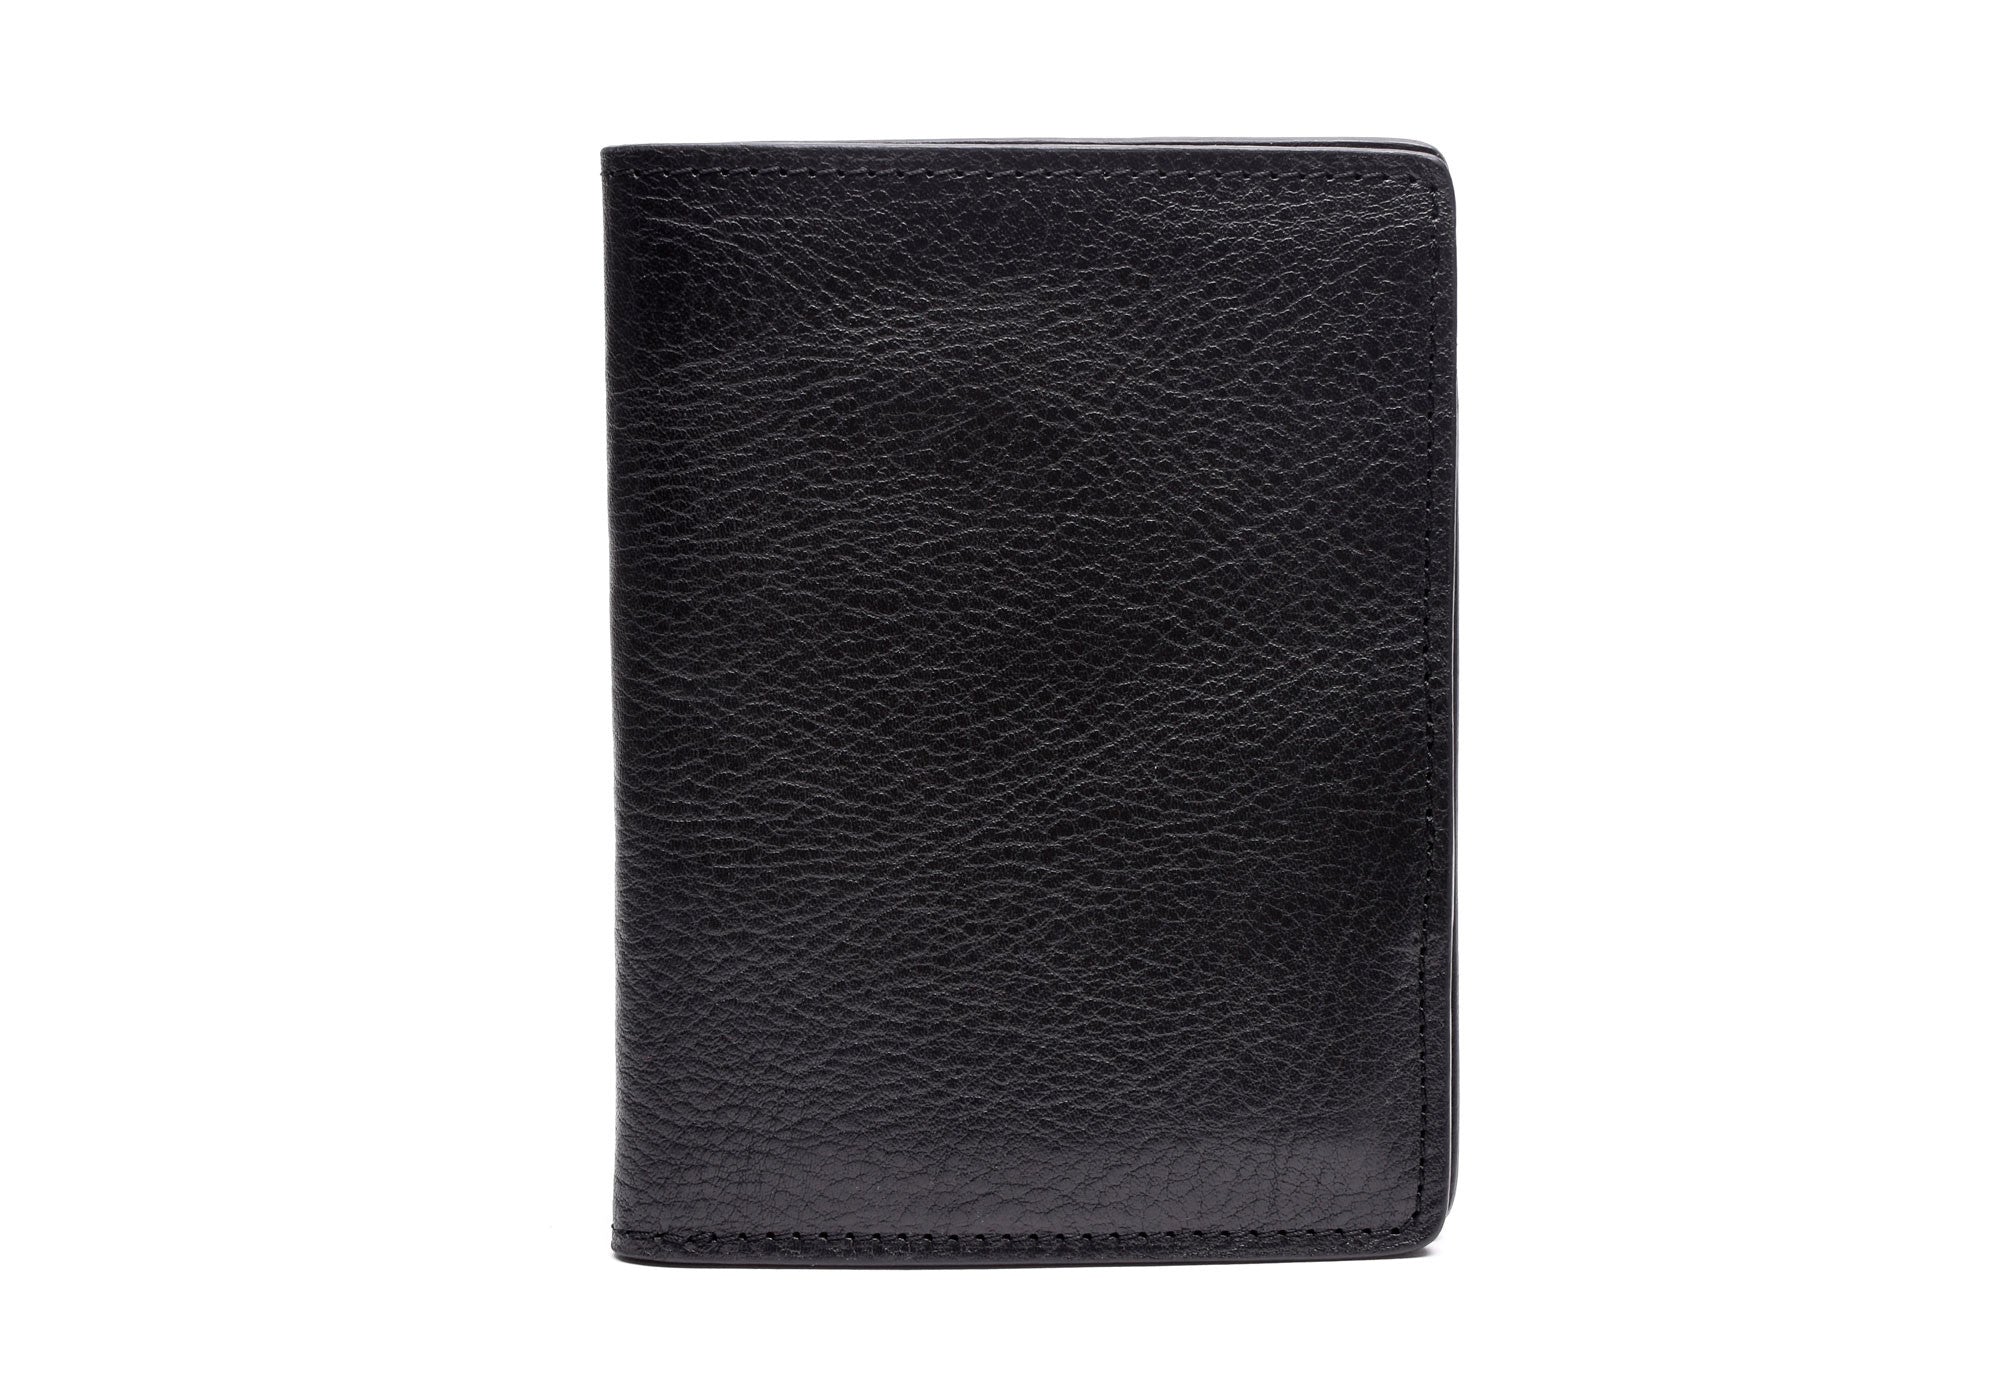 Typo - Off The Grid Passport Holder - Black Textured